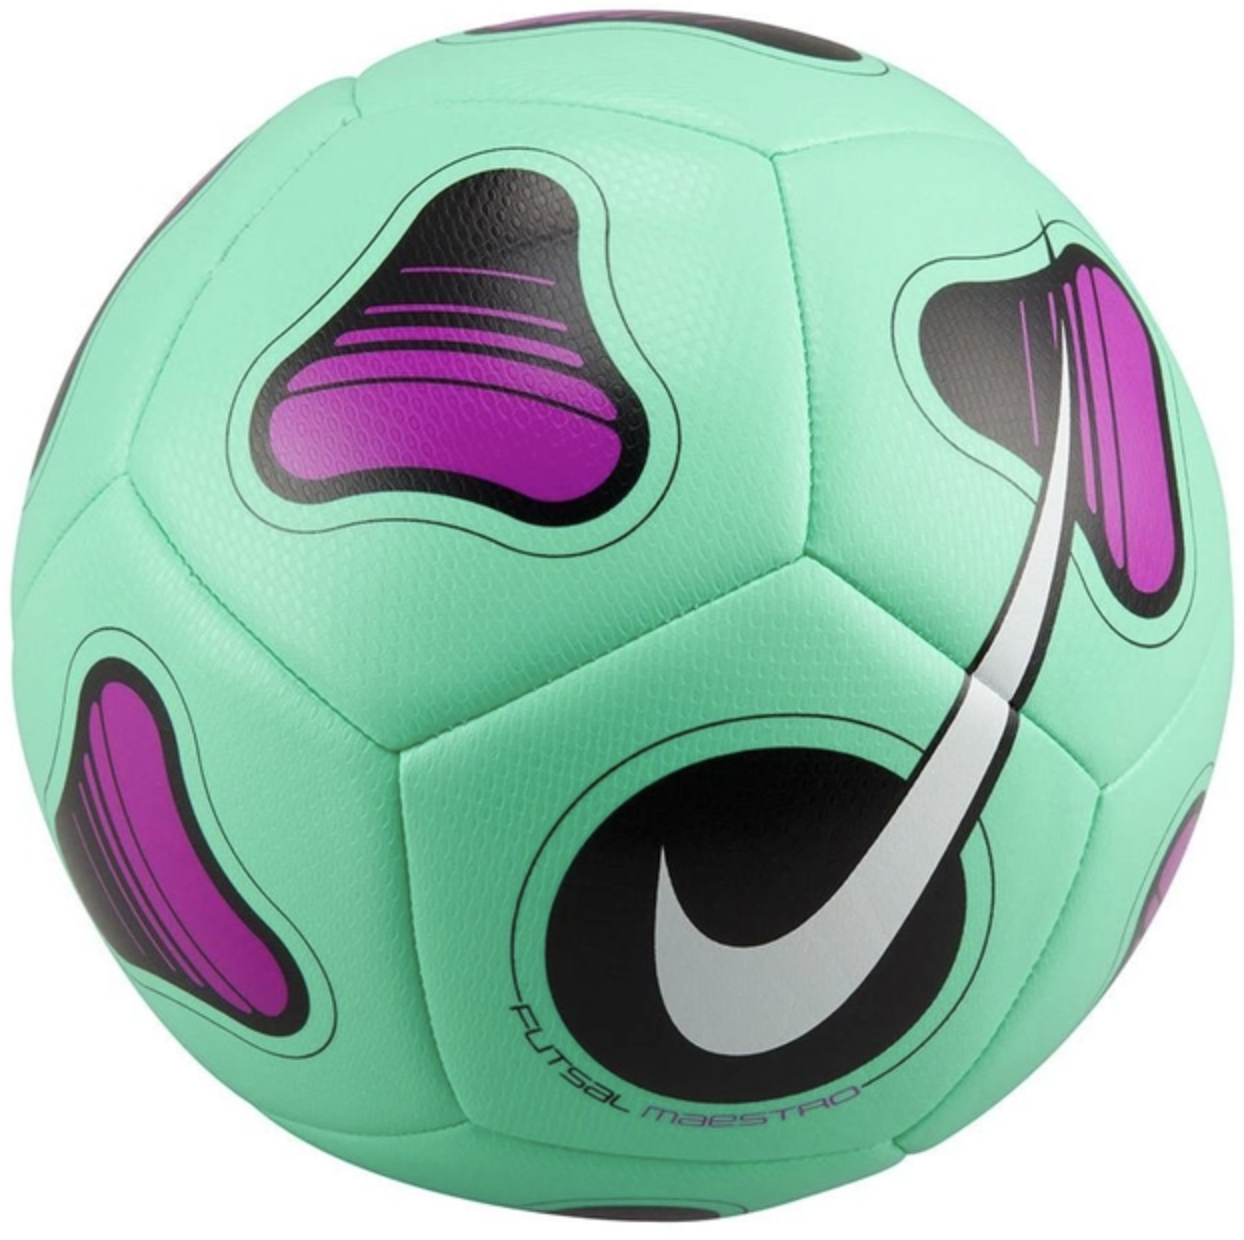 М'яч для футзала Nike Futsal Maestro FJ5547-342 (розмір 4),